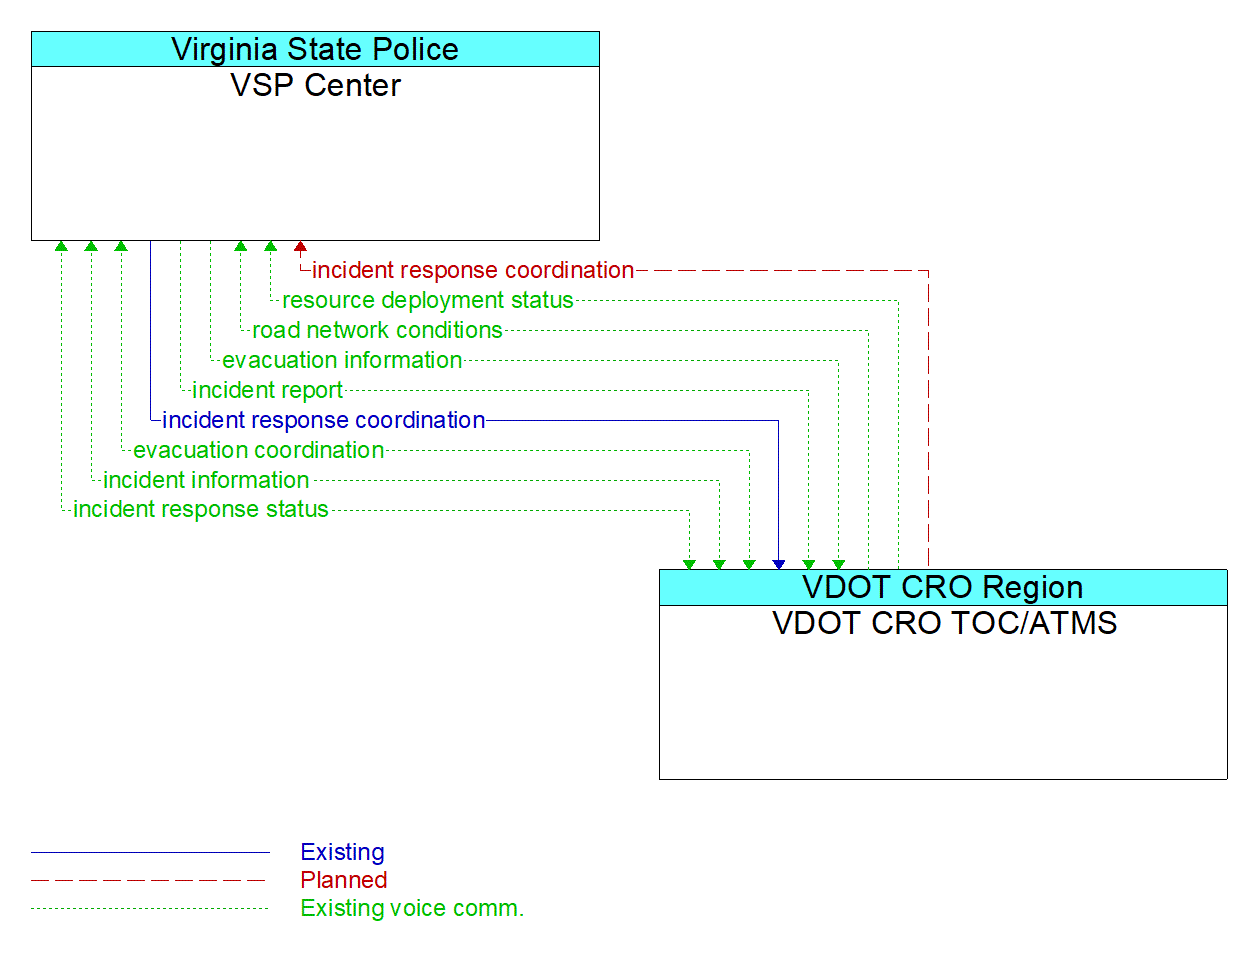 Architecture Flow Diagram: VDOT CRO TOC/ATMS <--> VSP Center